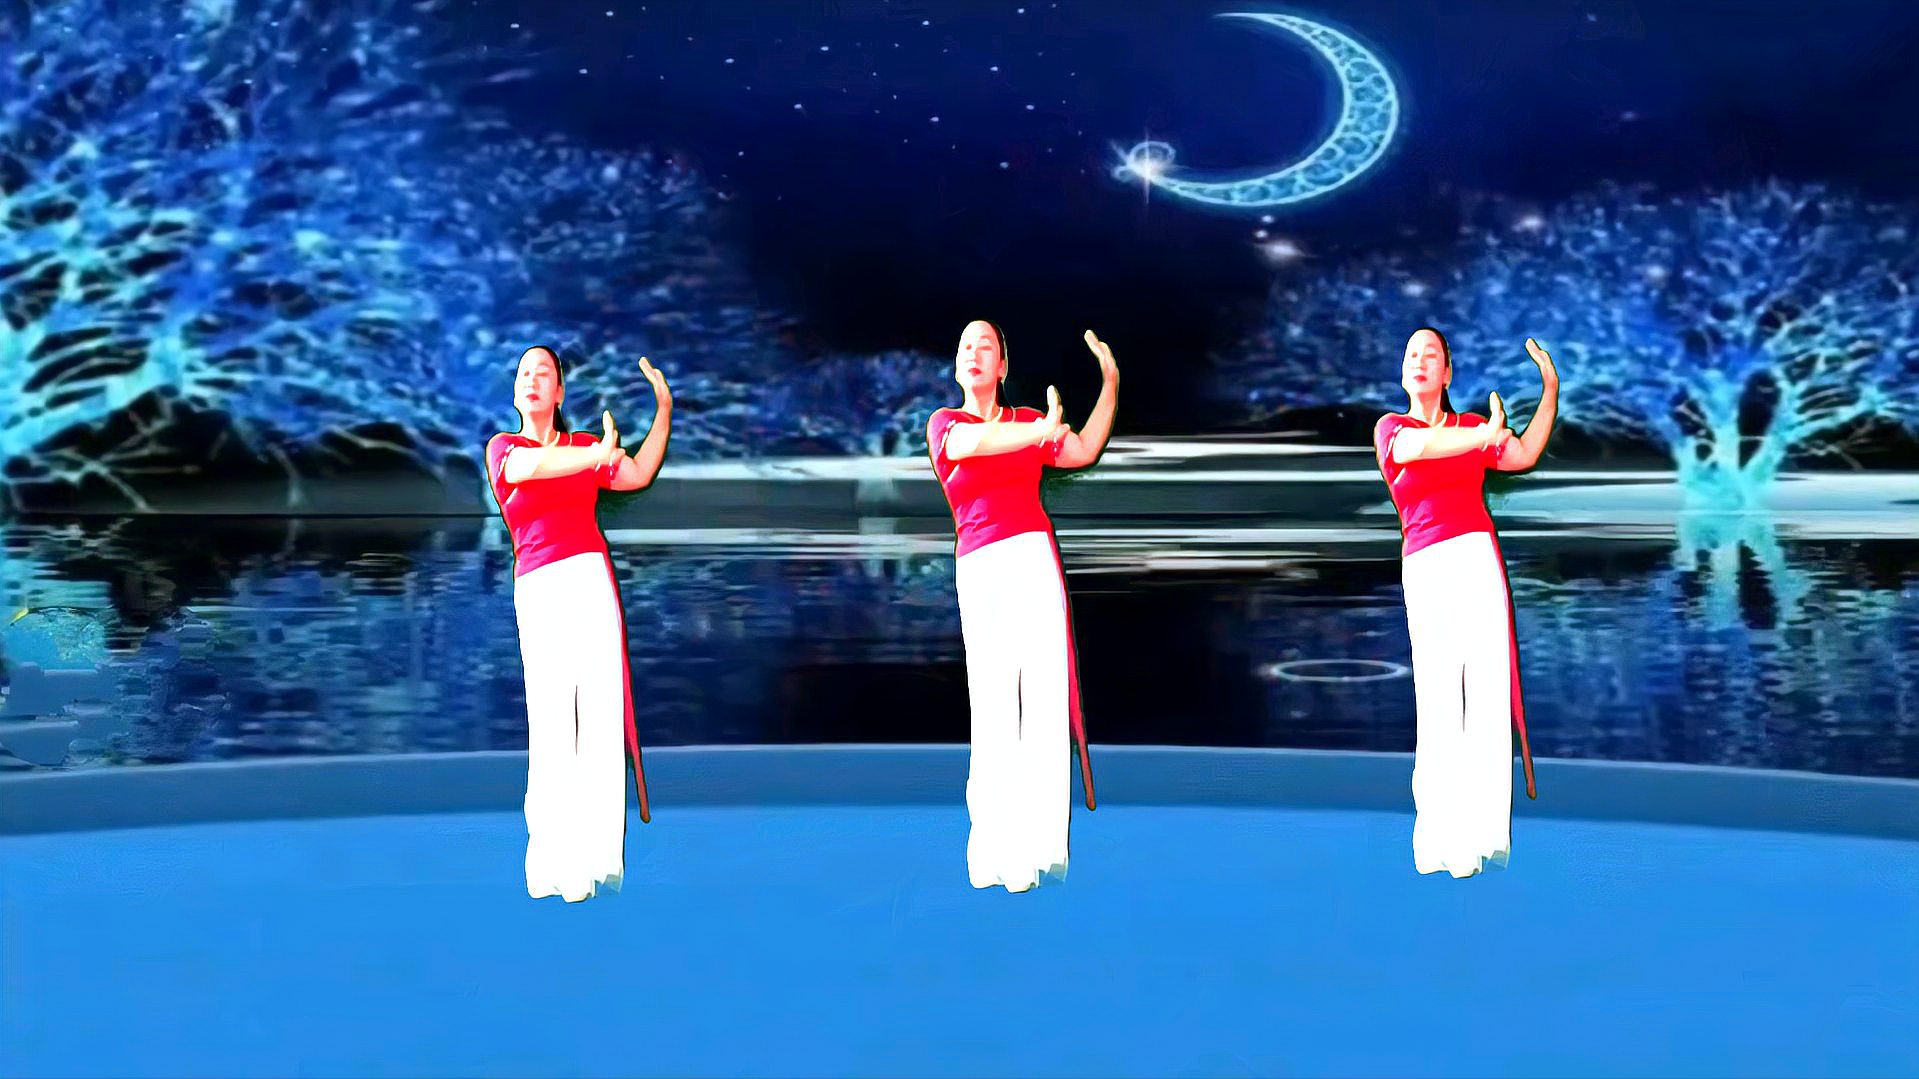 国庆,中秋双节特别献上一支《月亮升起来》简单40步正背面附教学